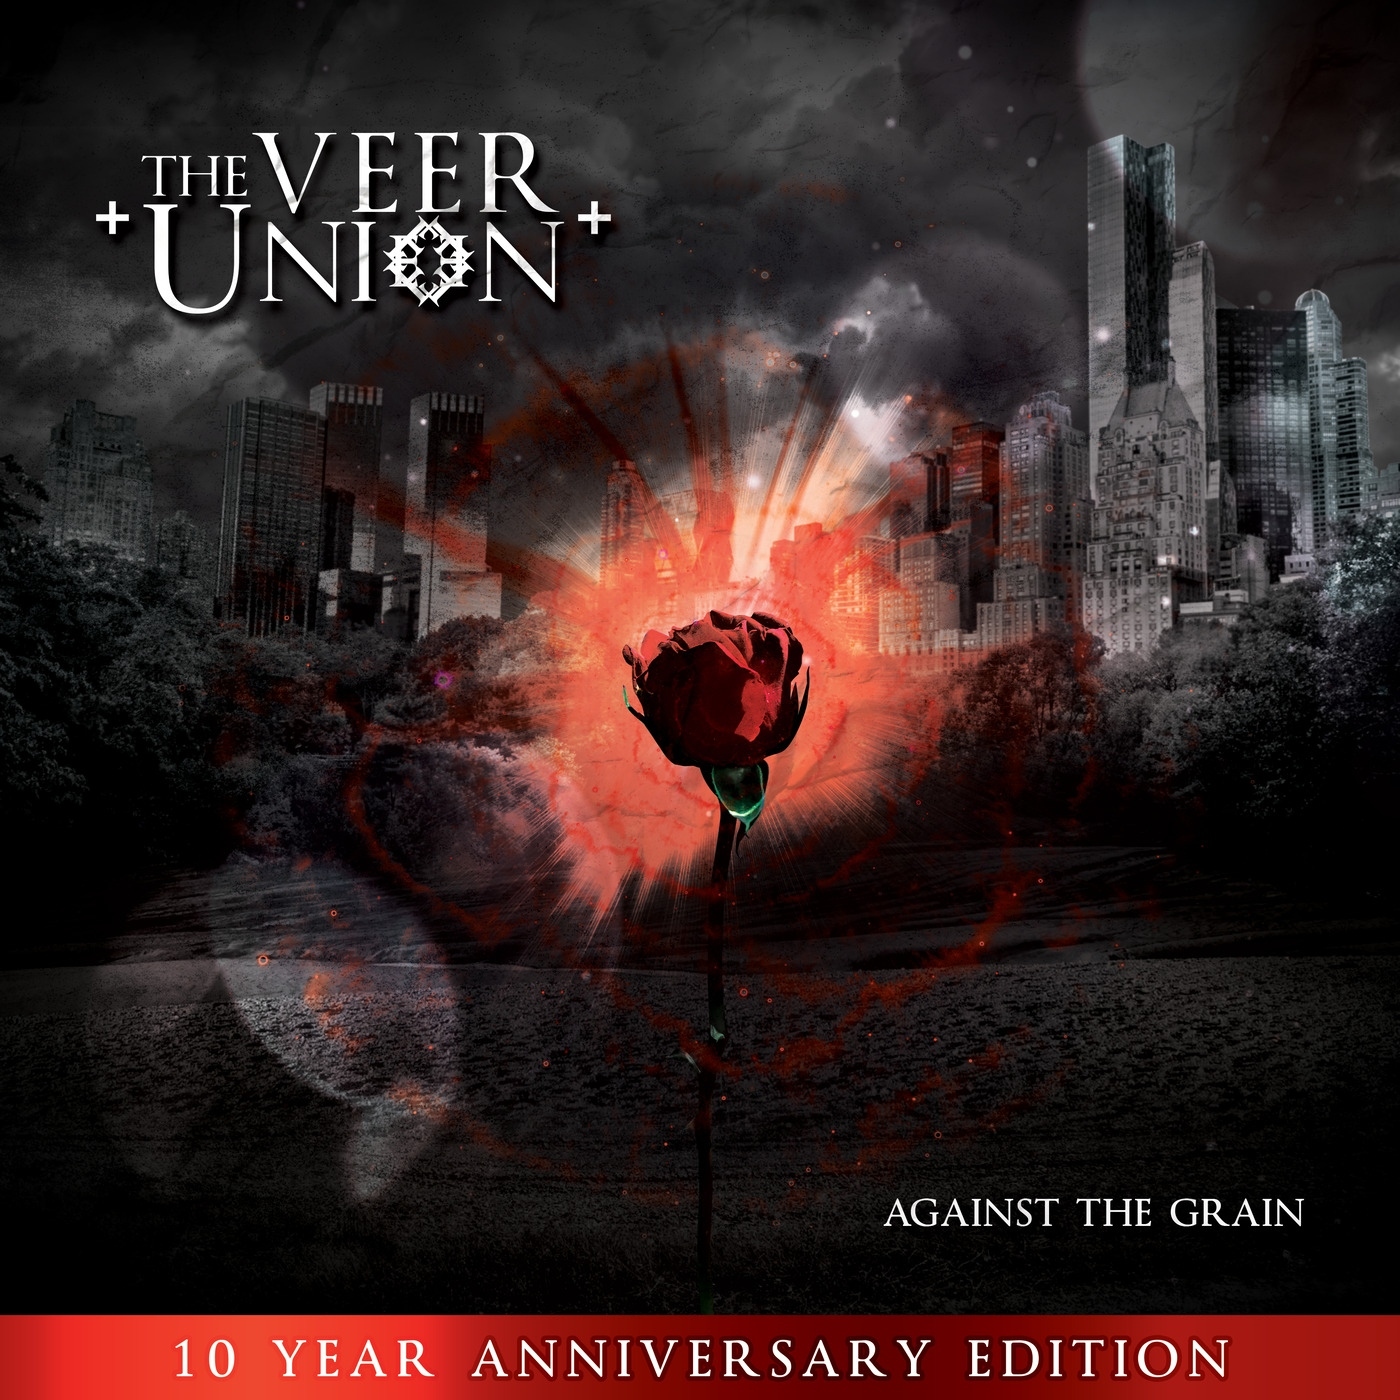 The veer union. The Veer Union фото. The Veer Union i m sorry. 10 35 The Veer Union.